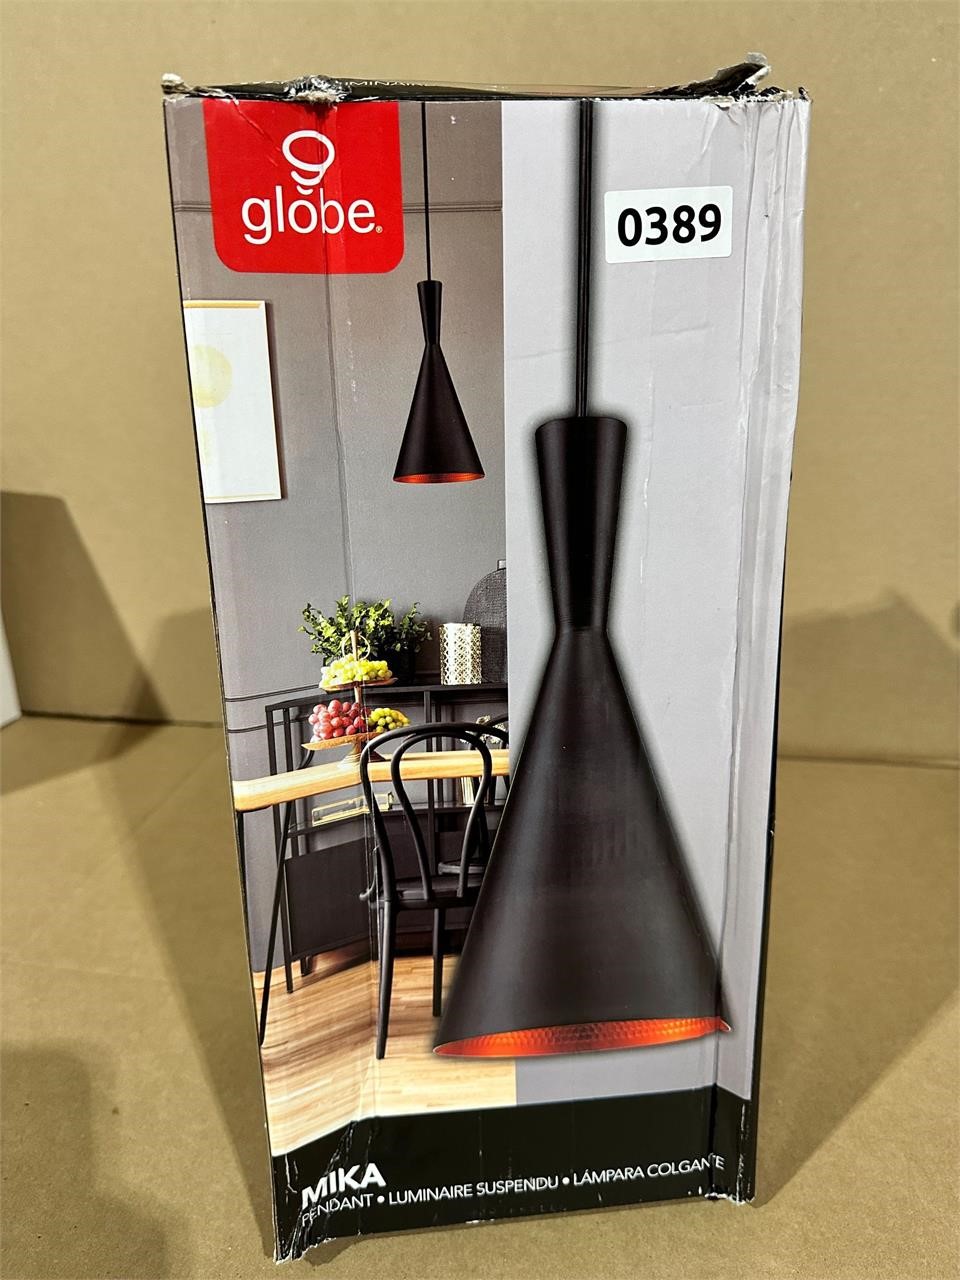 New globe hanging indoor light fixture